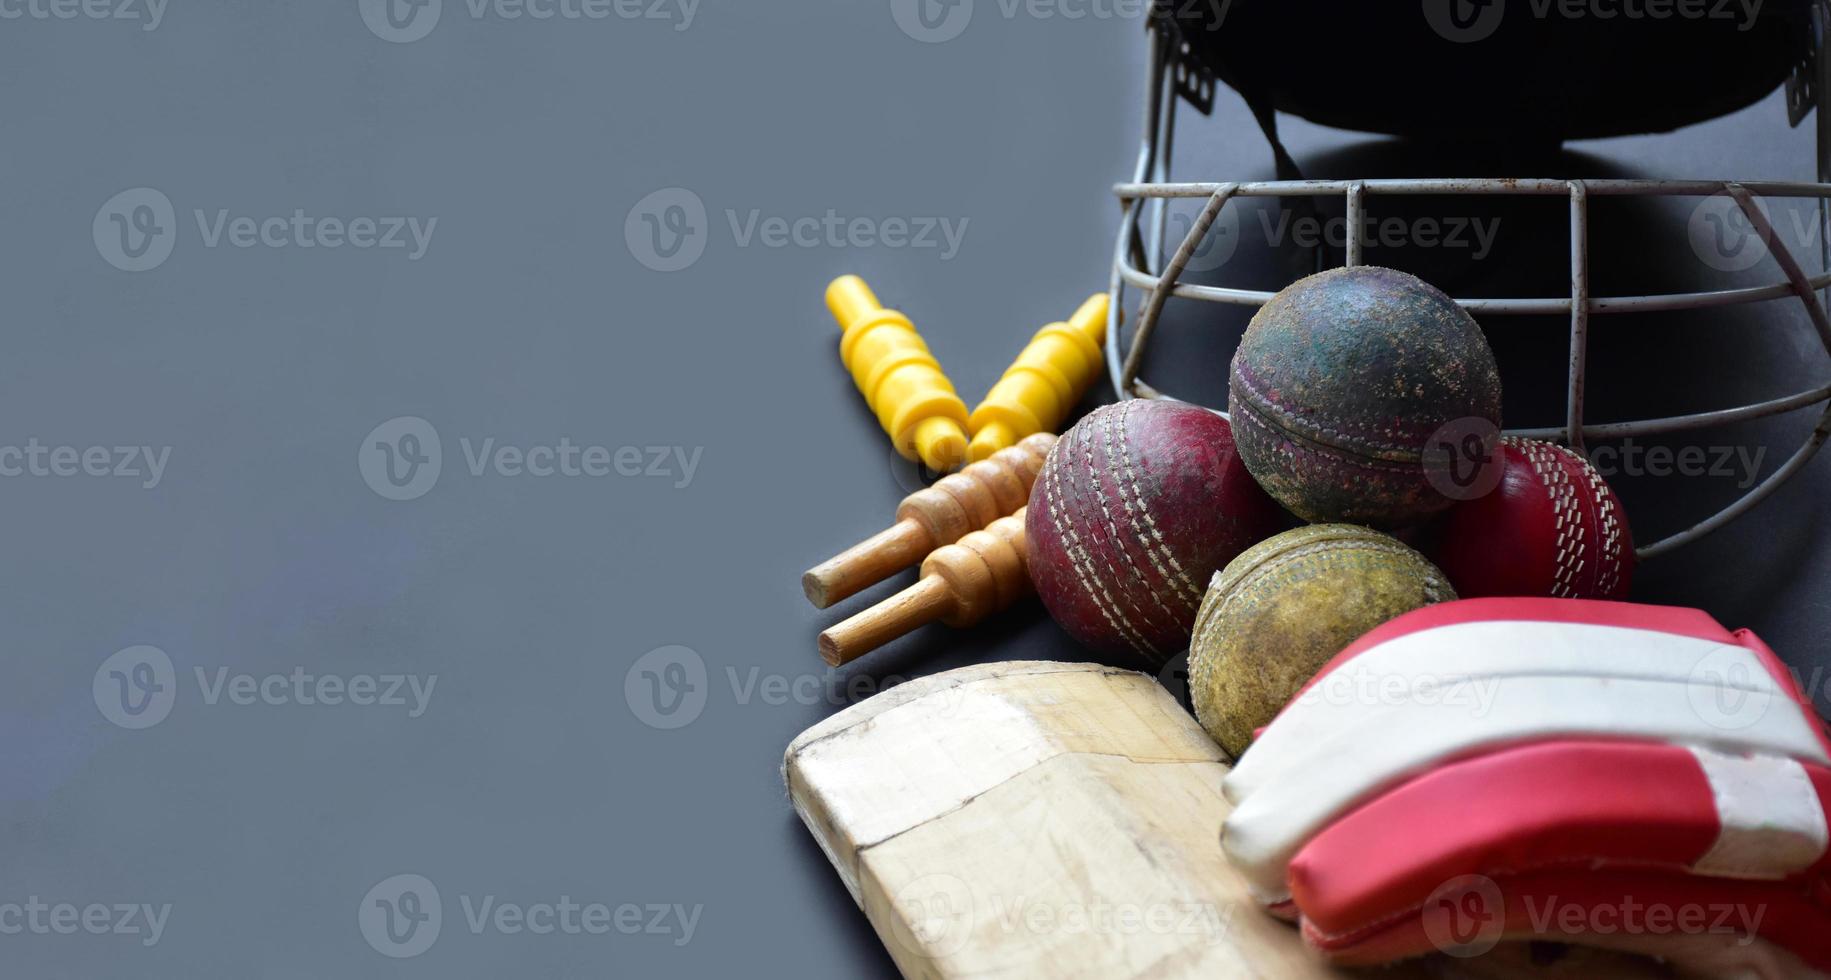 anciens équipements de sport de cricket d'entraînement sur sol sombre, balle en cuir, guichets, casque et chauve-souris en bois, mise au point douce et sélective, amateurs de sport de cricket traditionnels dans le monde entier. photo